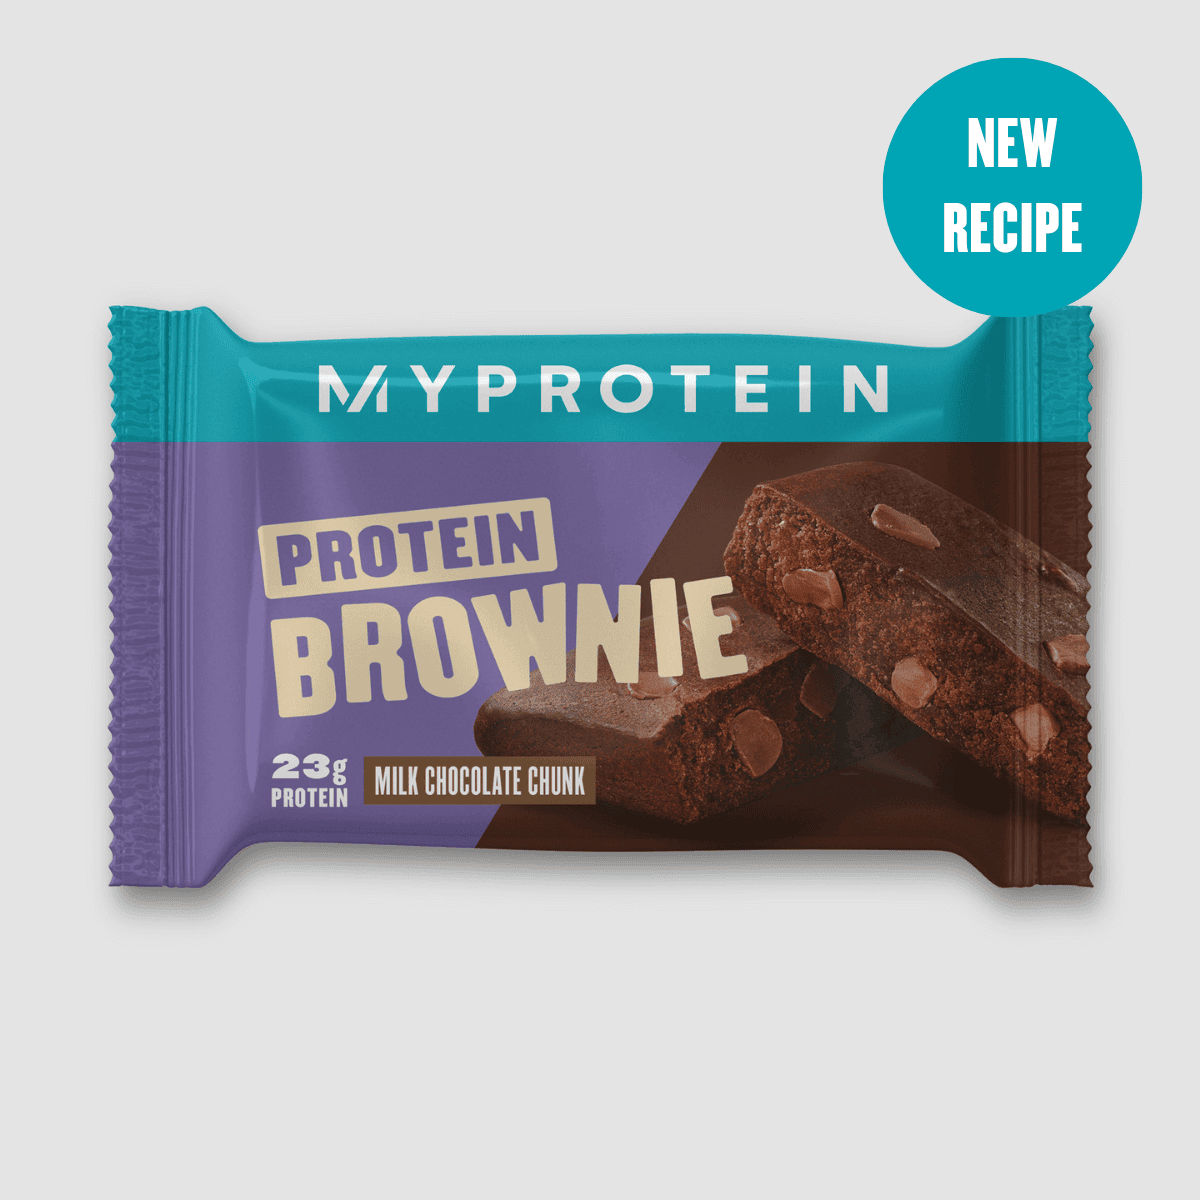 Baltyminis šokoladainis „Protein Brownie“ (mėginys) - Chocolate Chunk